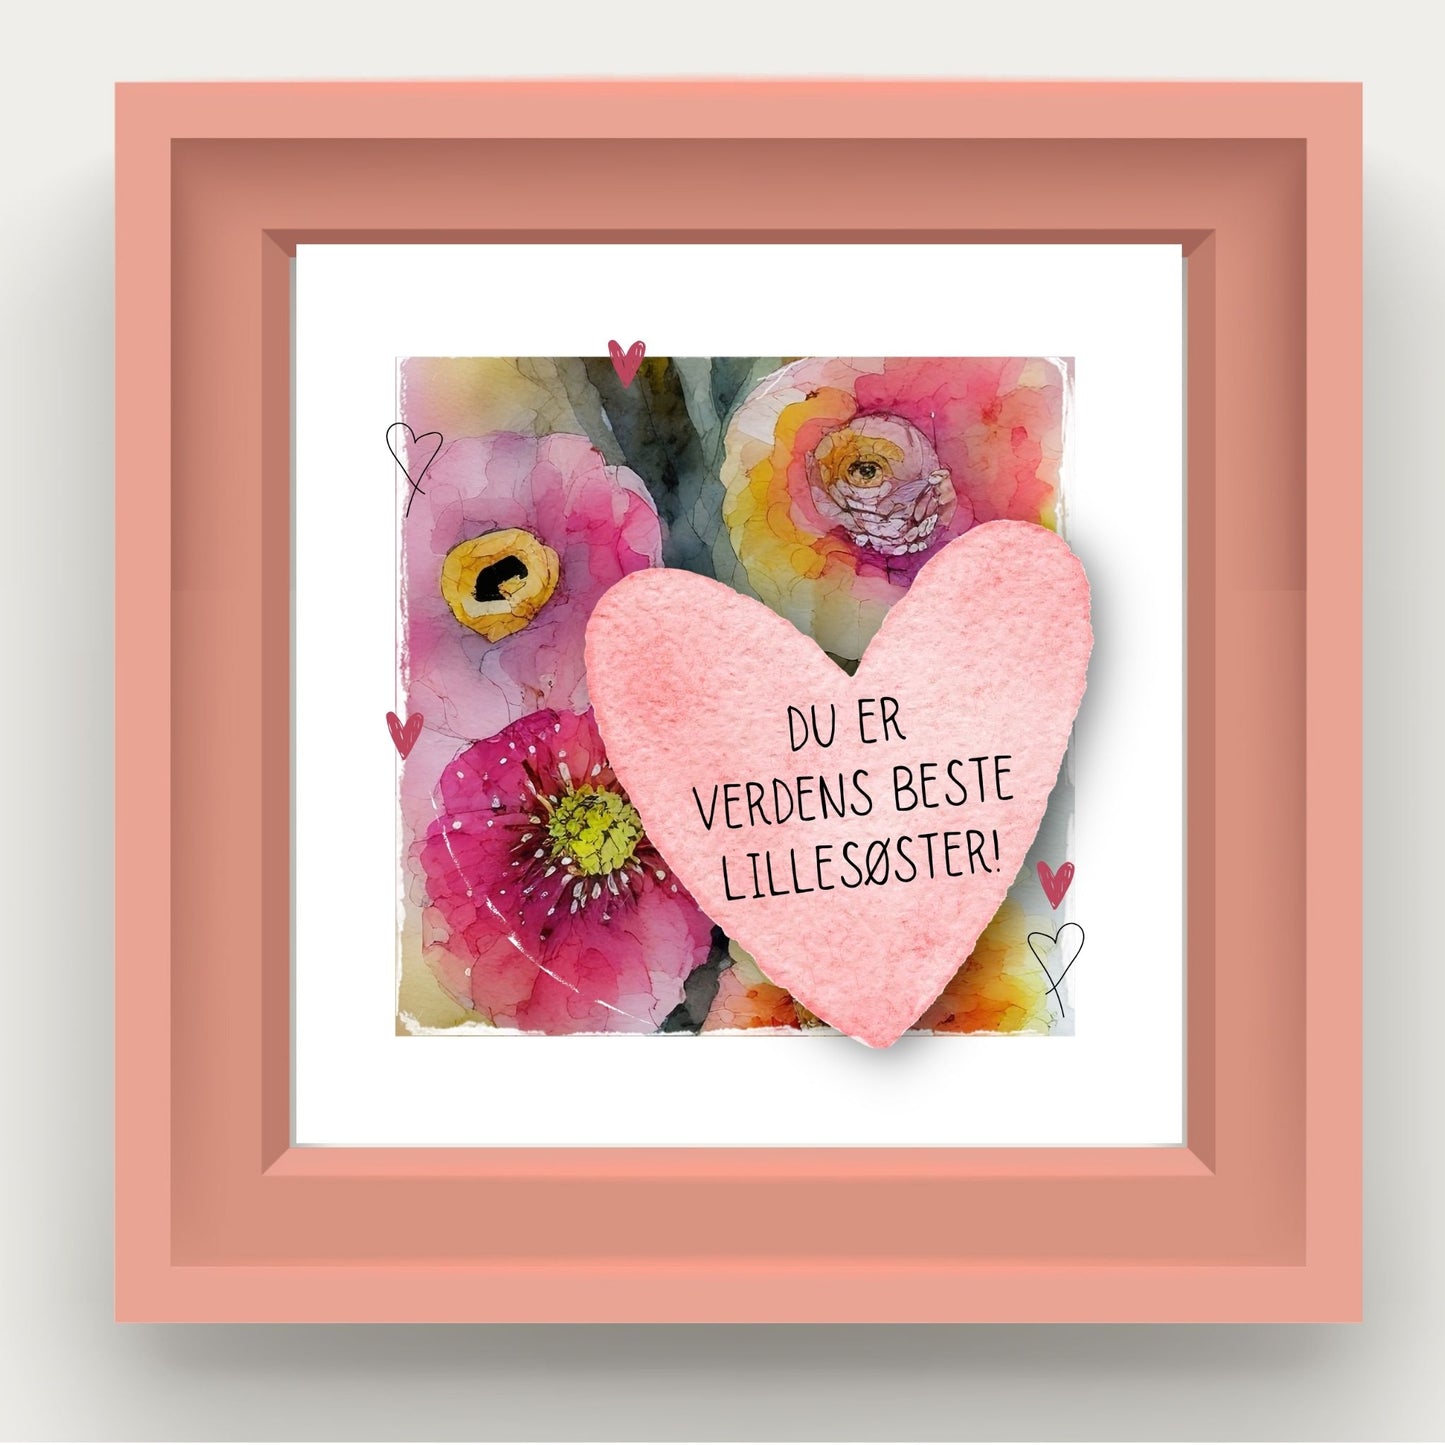 Grafisk plakat med et rosa hjerte påført tekst "Du er verdens beste lillesøster". Bagrunn i cerise og guloransje blomster. Illustrasjon viser plakat i rosa ramme.